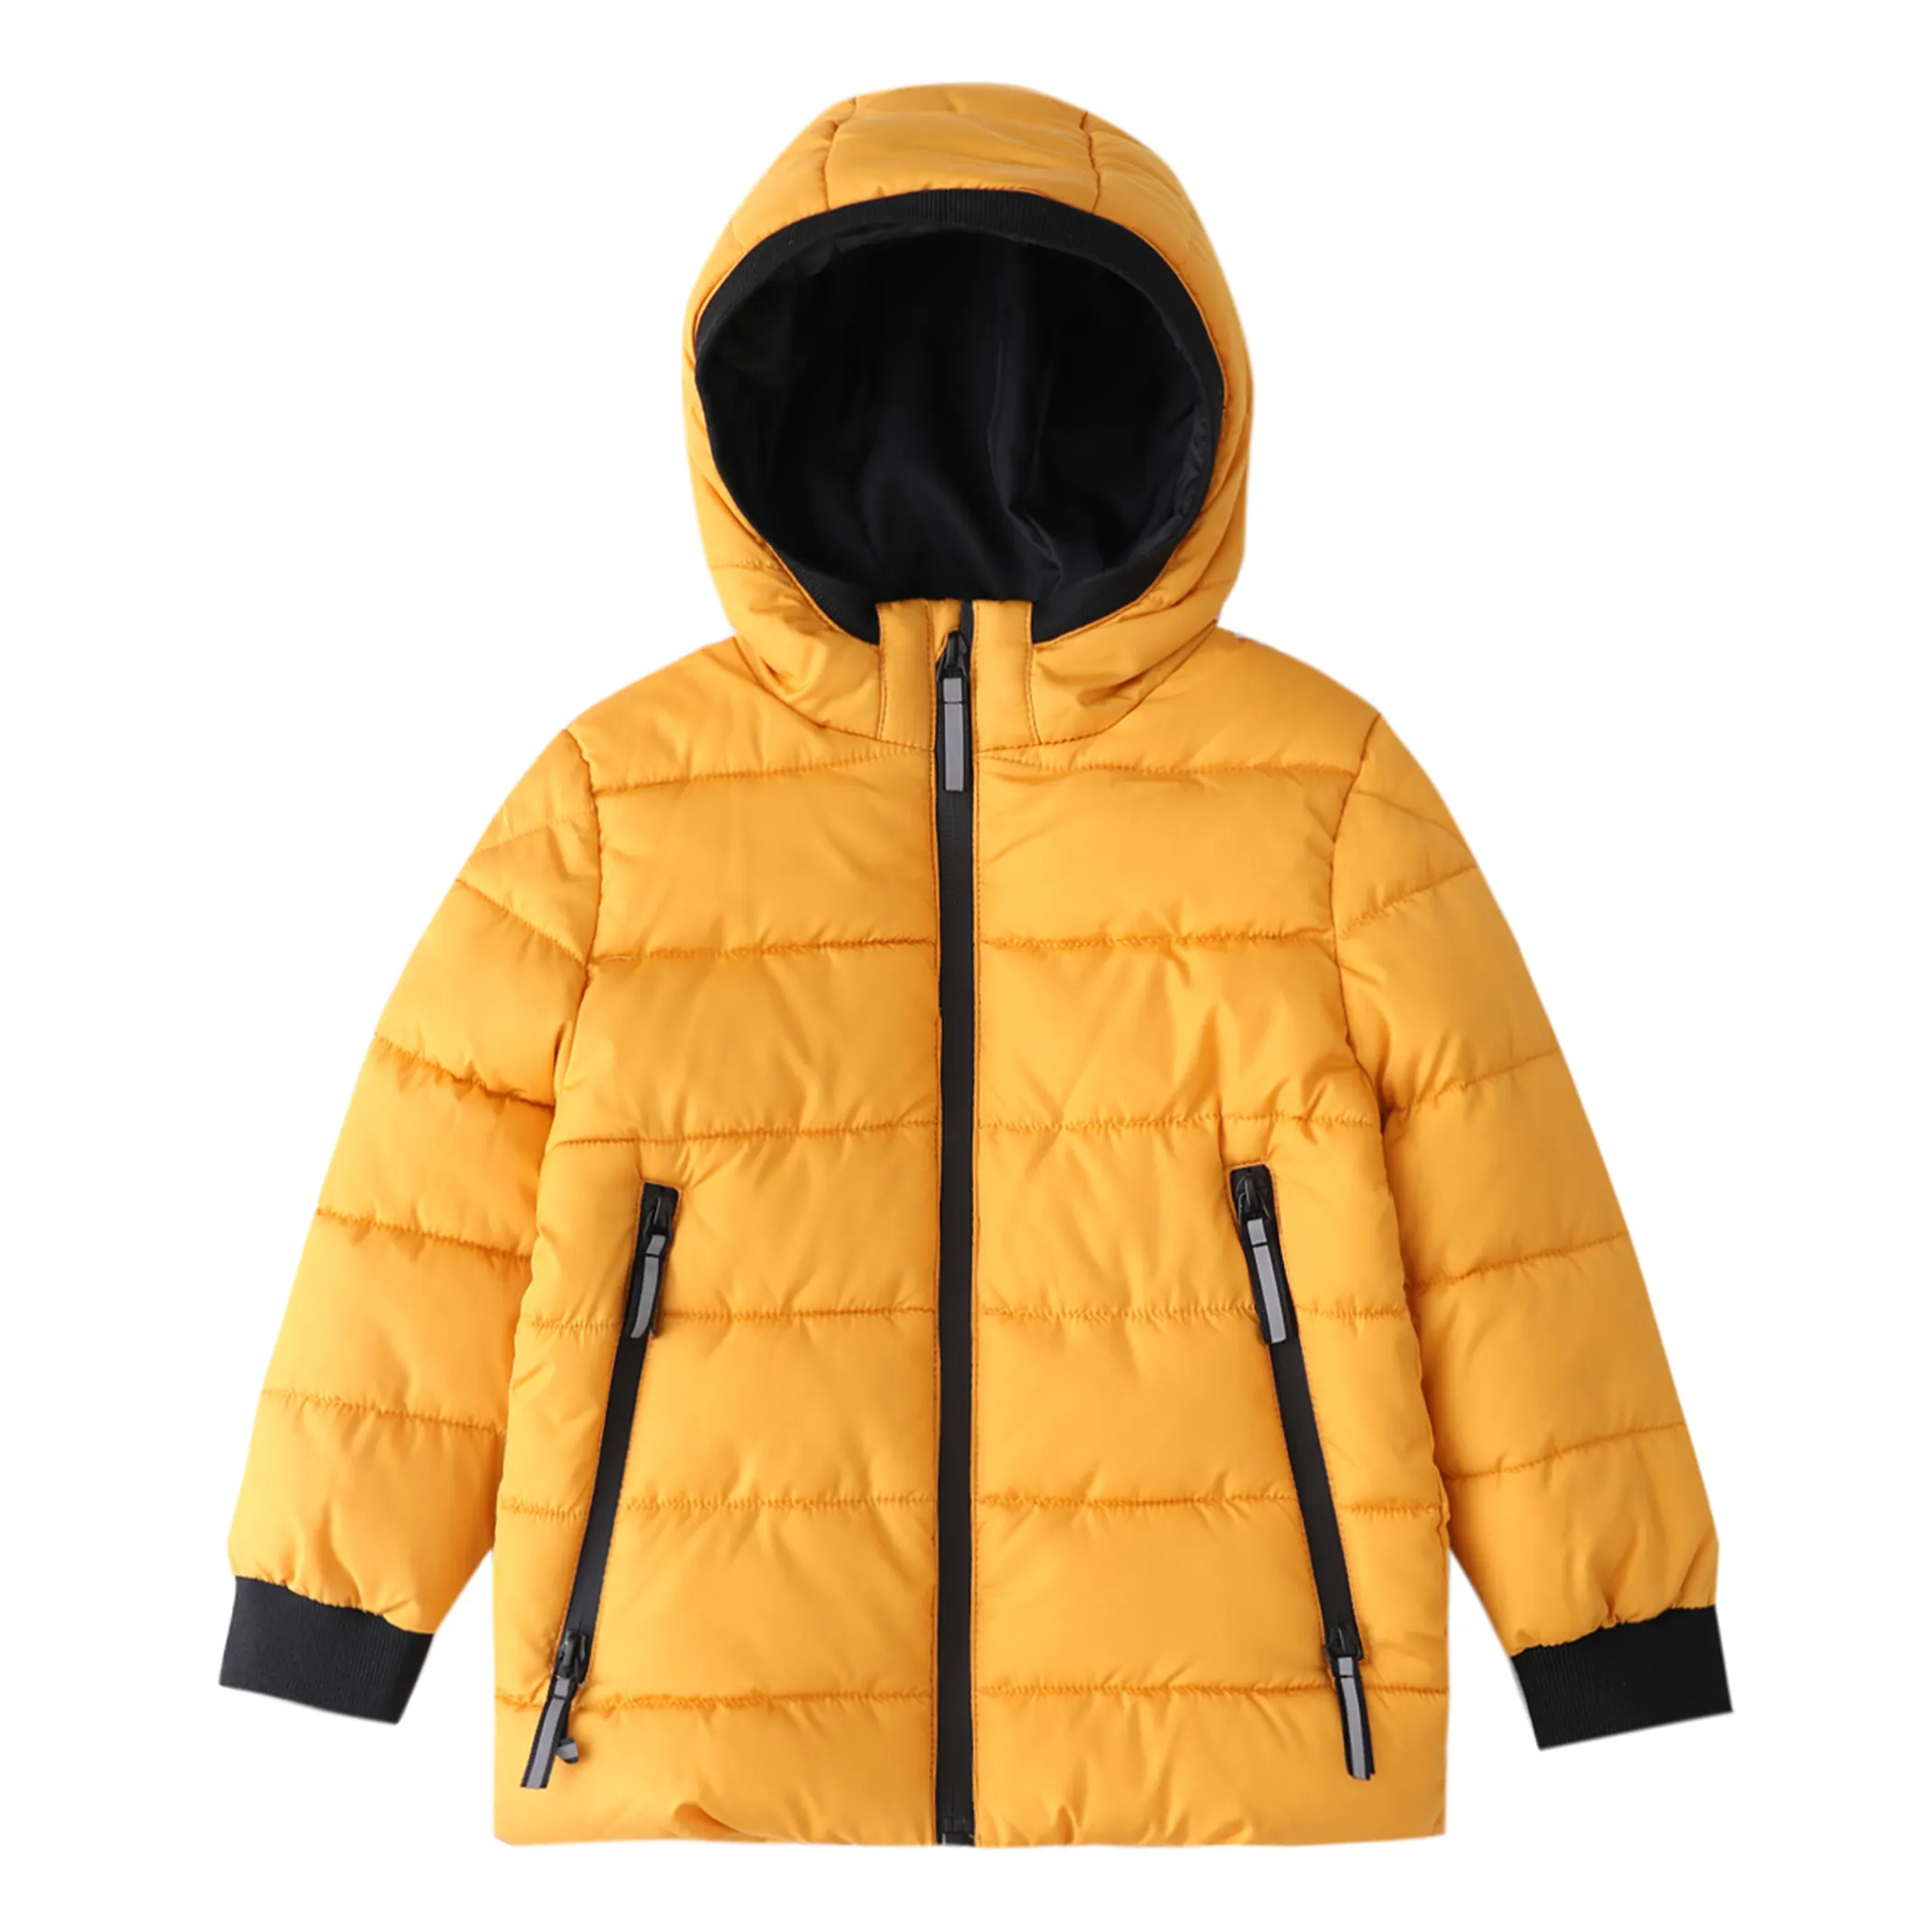 Vente en gros de manteaux d'hiver personnalisés pour enfants, garçons et filles, vestes rembourrées chaudes avec doublure polaire isolée, manteaux d'extérieur